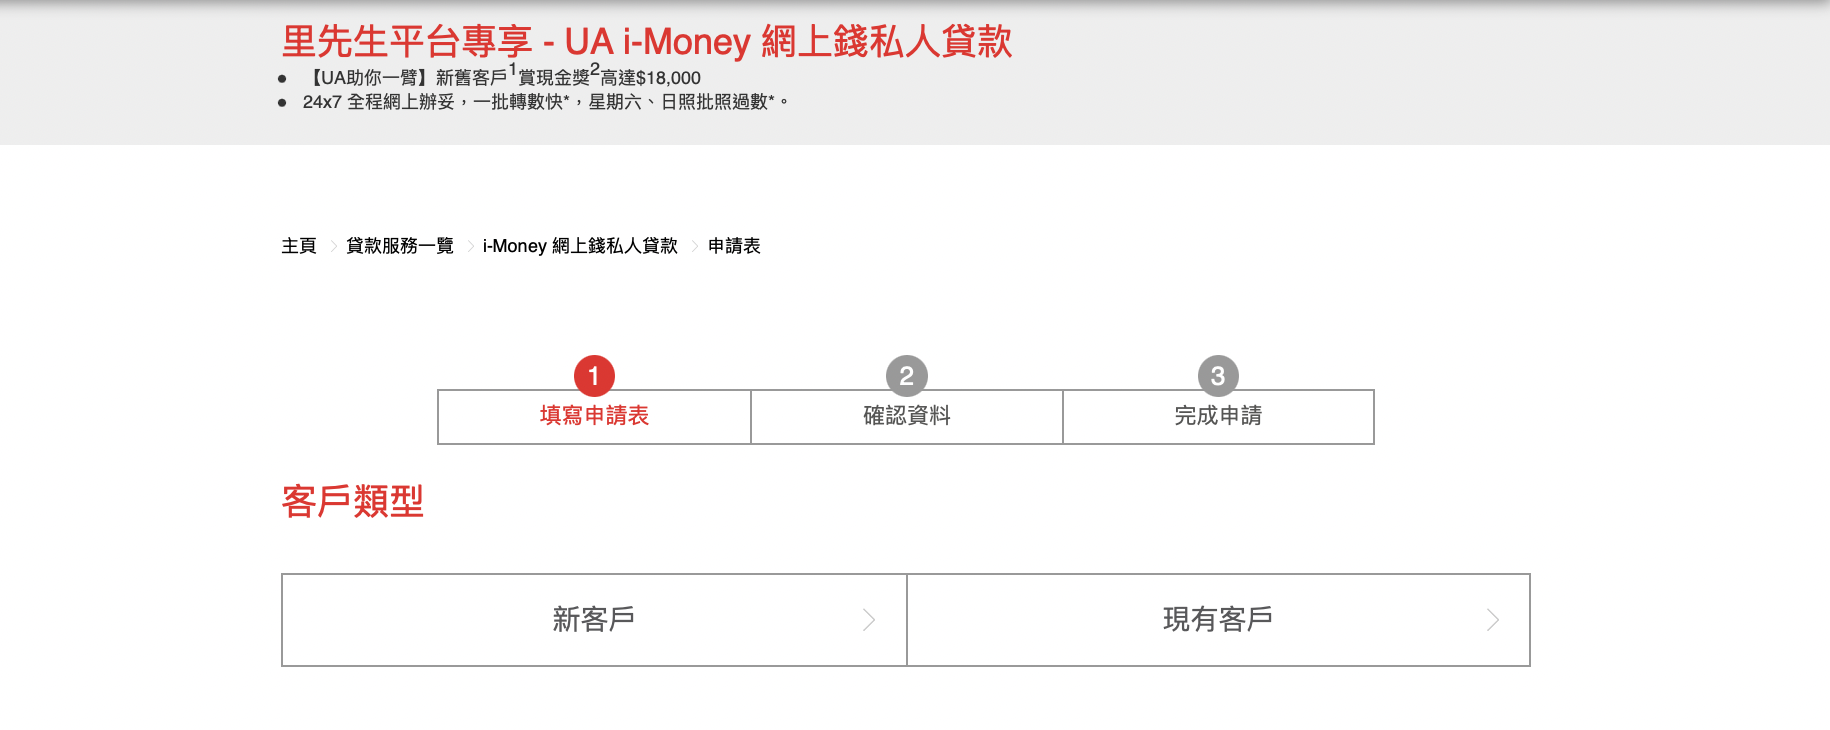 【UA i-Money 網上錢私人貸款優惠】新舊客戶#都有開戶獎賞HK$200#！成功提取分期私人貸款，再賞現金獎高達HK$18,000#！現金24小時即撳即過數*！